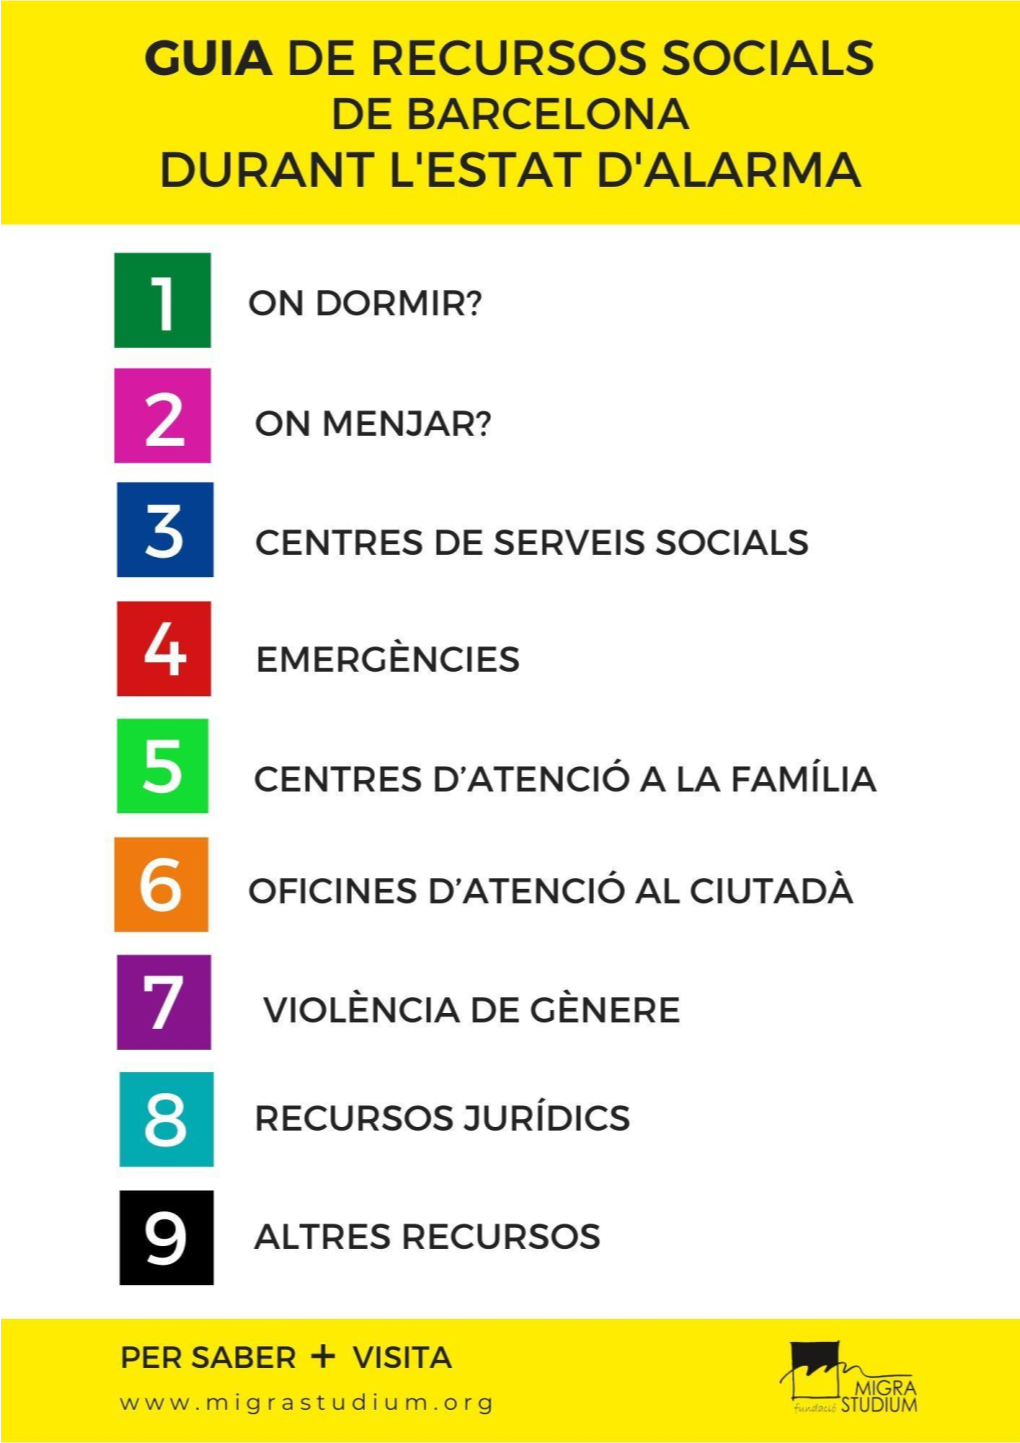 Guia De Recursos Socials, Jurídics I D'ocupació De Barcelona